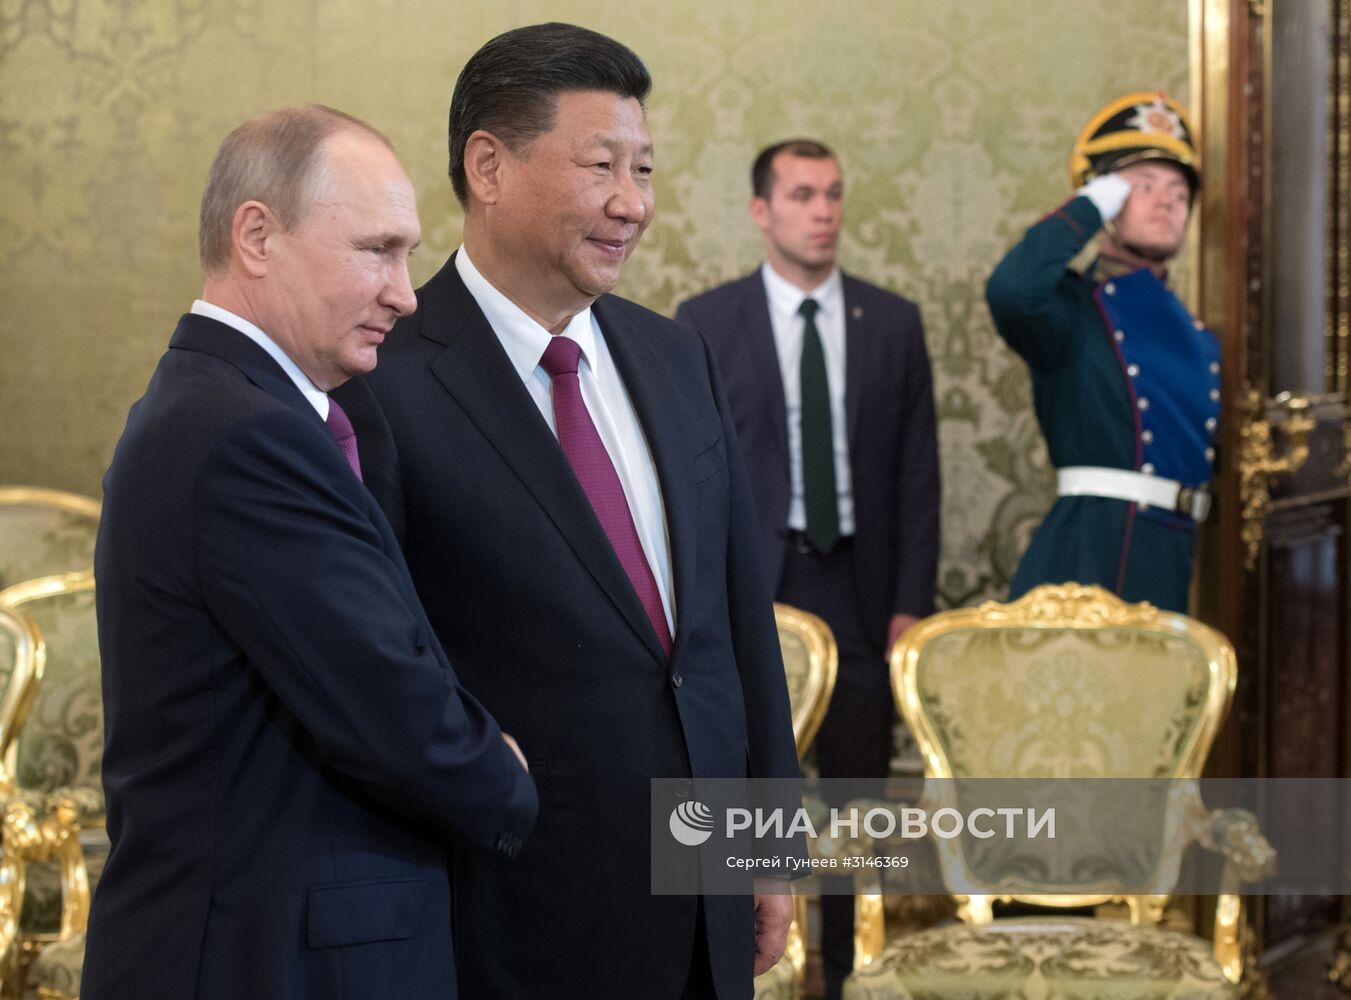 Встреча президента РФ В. Путина и председателя КНР Си Цзиньпина в Москве